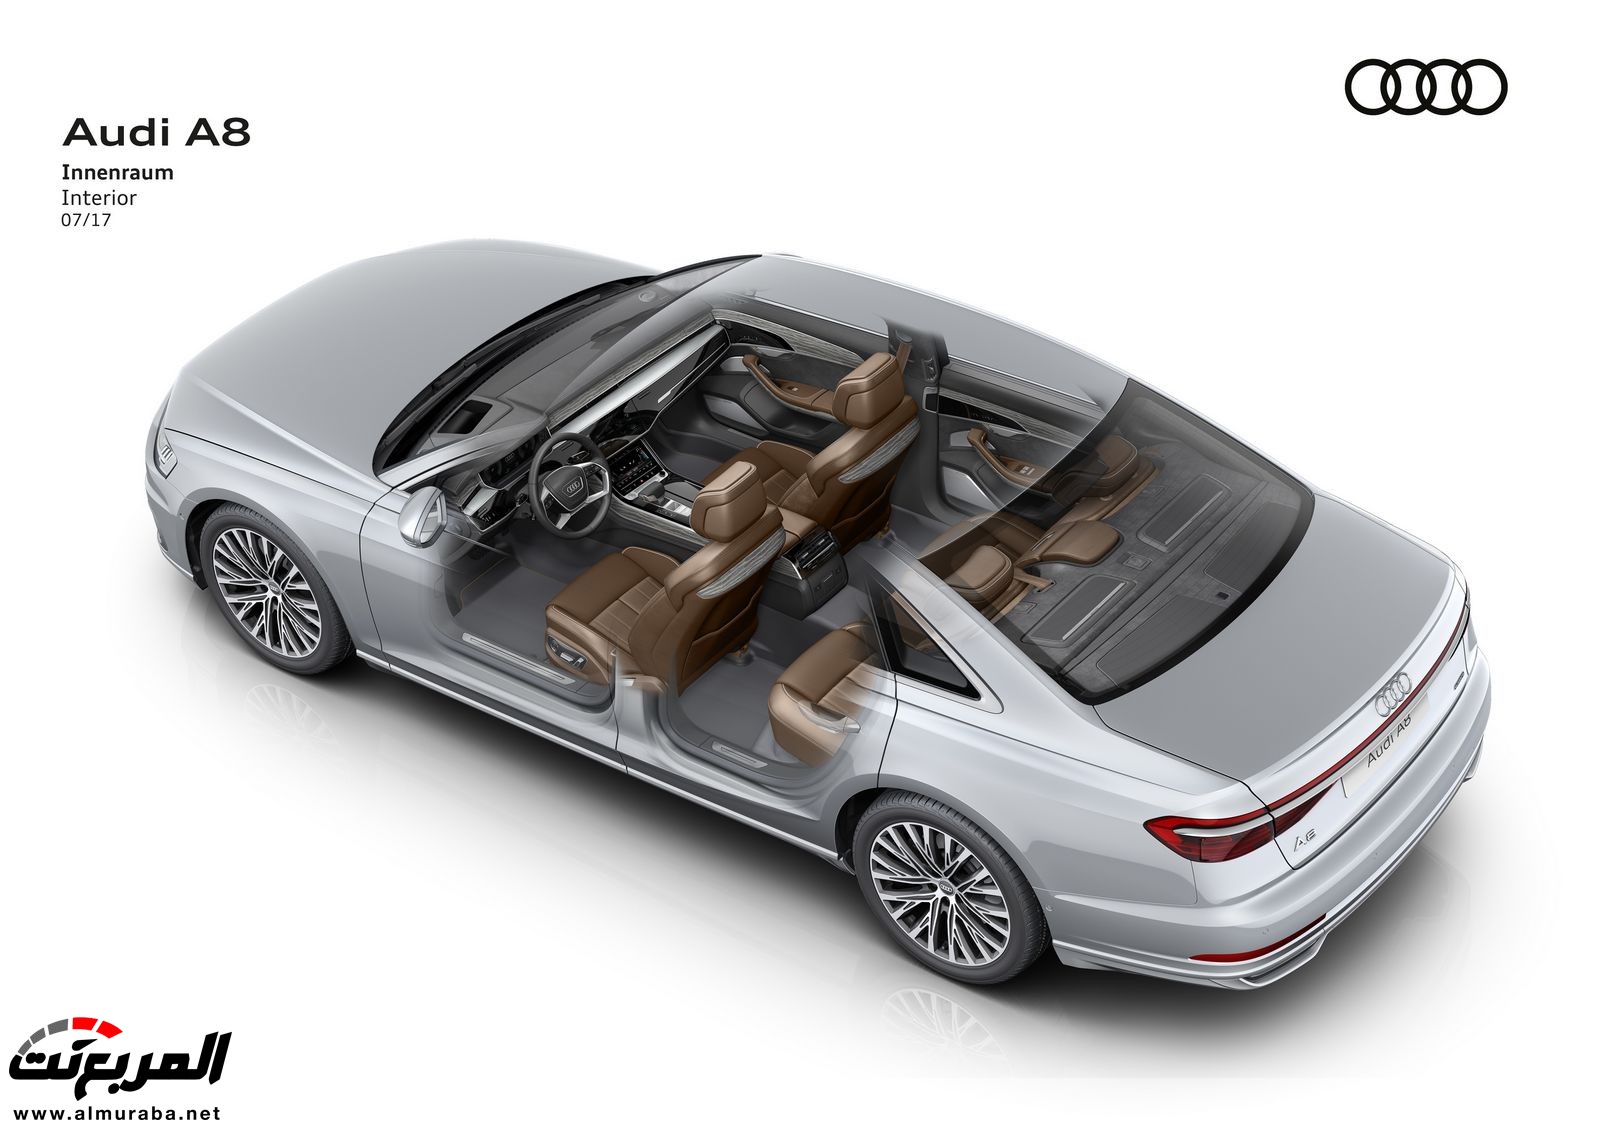 أودي A8 2018 الجديدة كلياً تكشف نفسها بتصميم وتقنيات متطورة "معلومات + 100 صورة" Audi A8 83